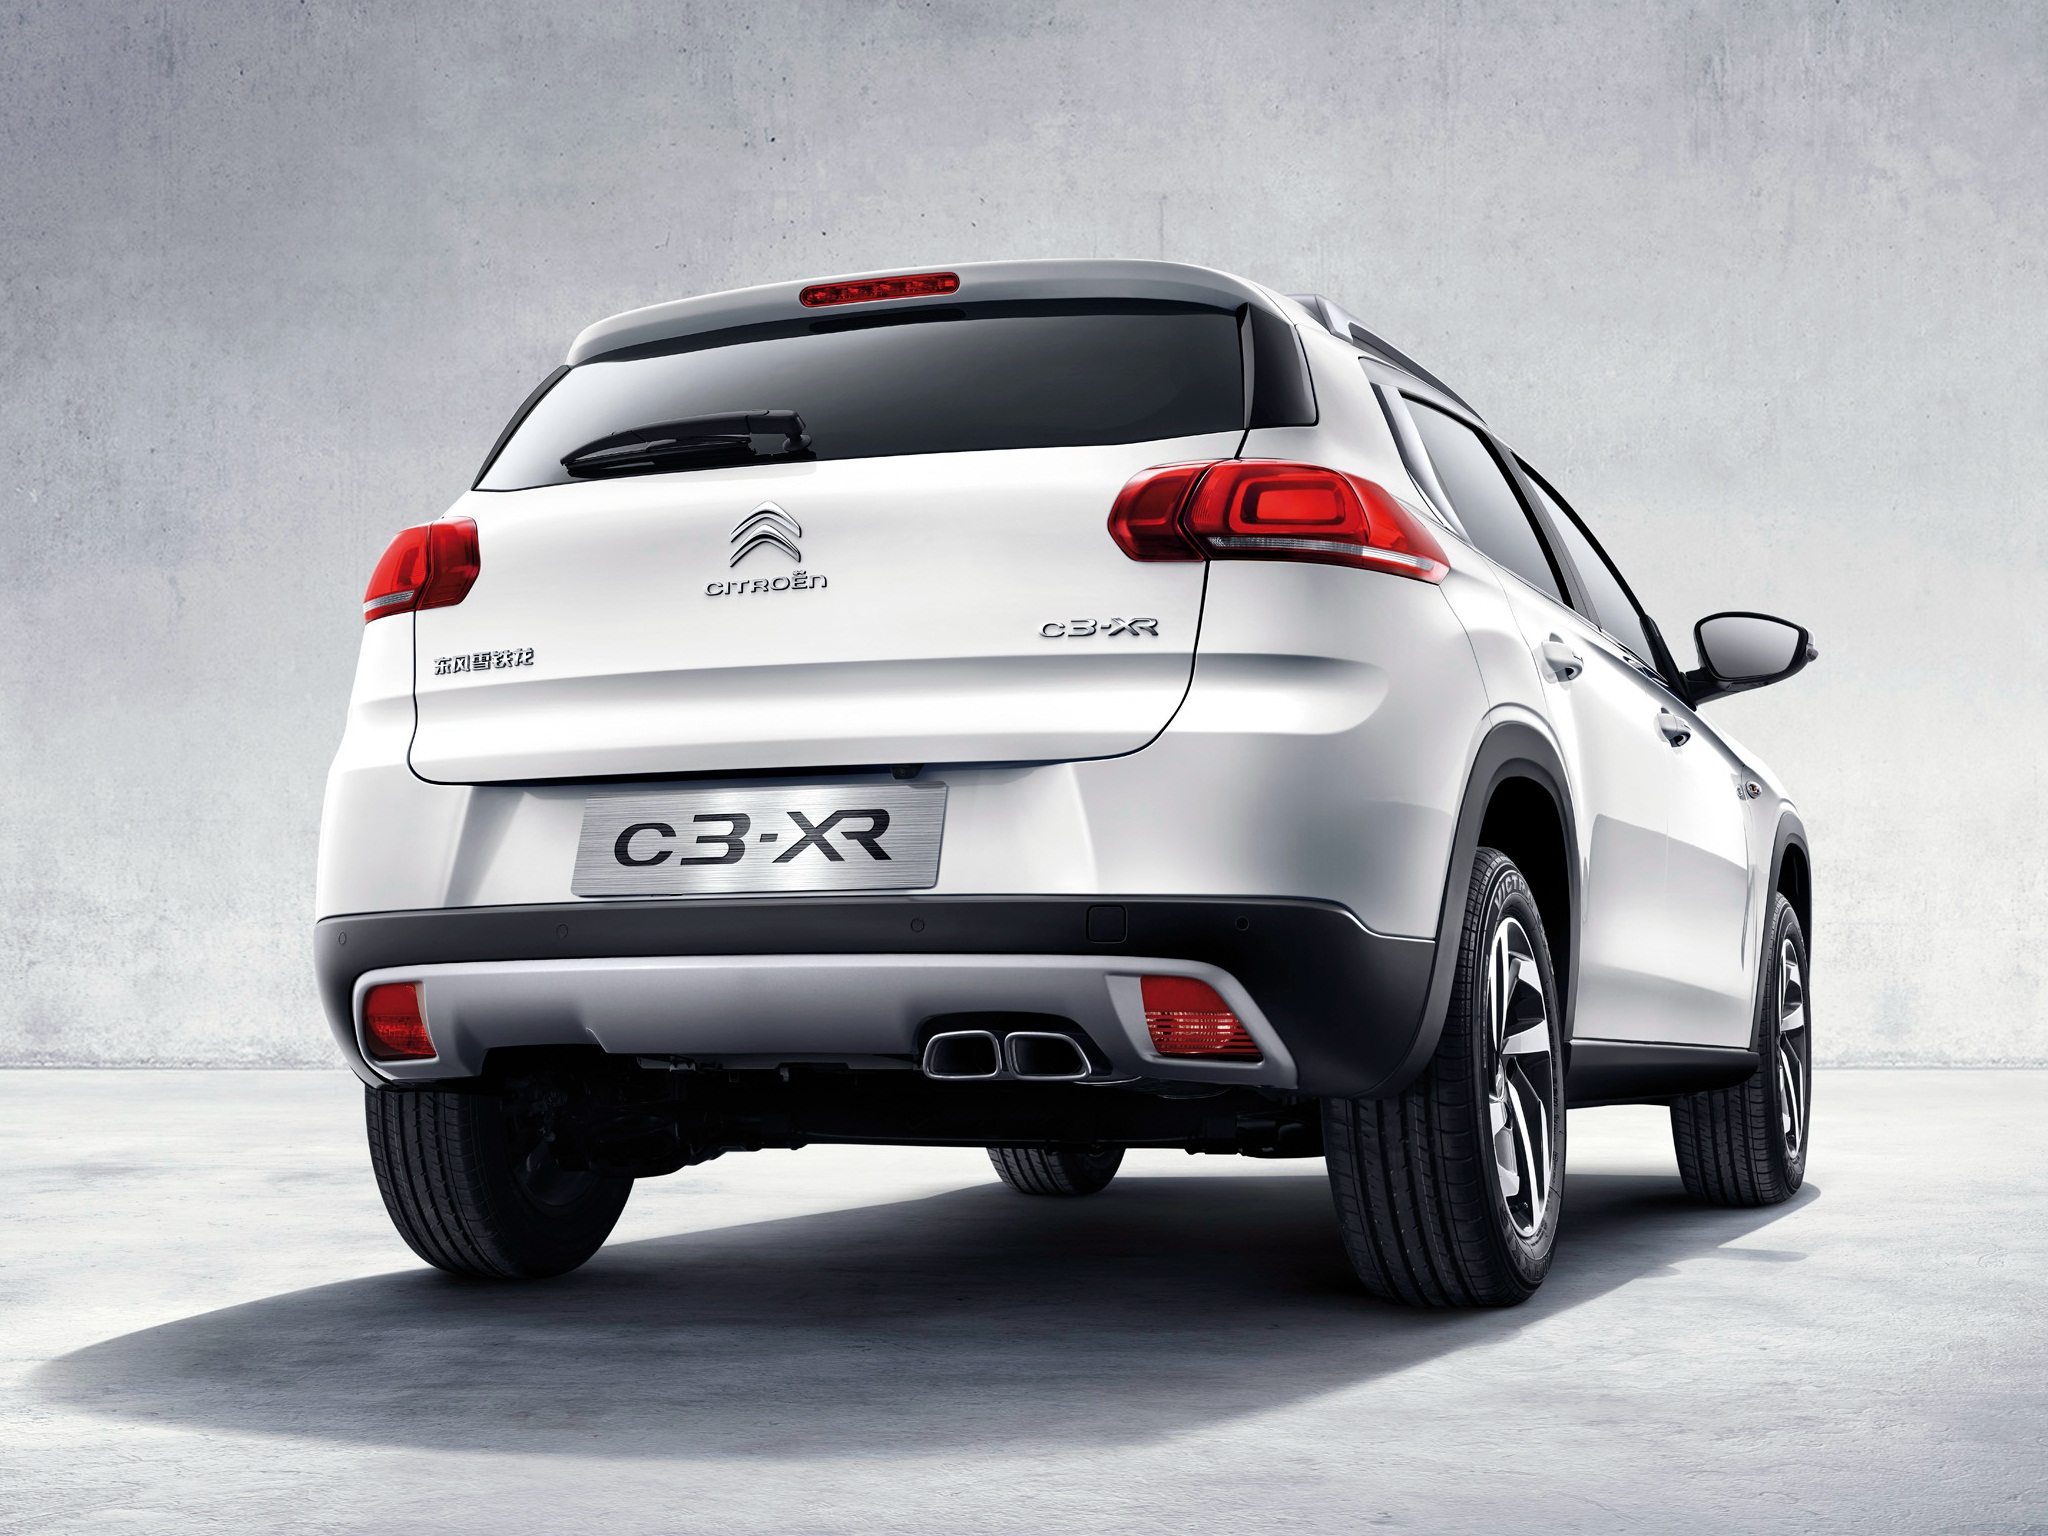 Télécharger des fonds d'écran Citroën C3 Xr 2015 HD